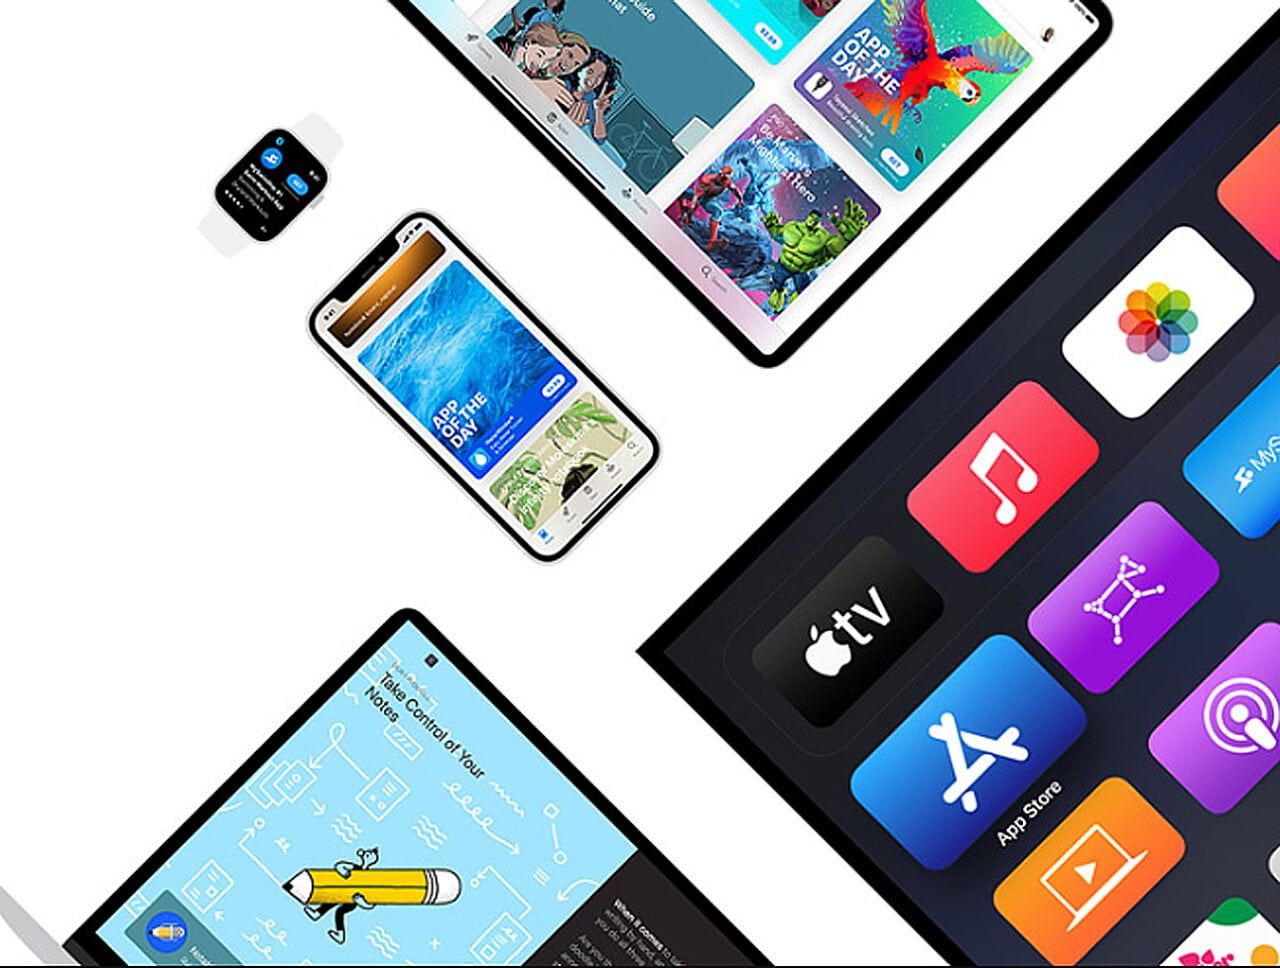 Kompozycja urządzeń Apple z elektronicznych: smartfona, tabletu i inteligentnego zegarka z wyświetlanymi różnorodnymi aplikacjami i funkcjami, w tym sklep App Store.